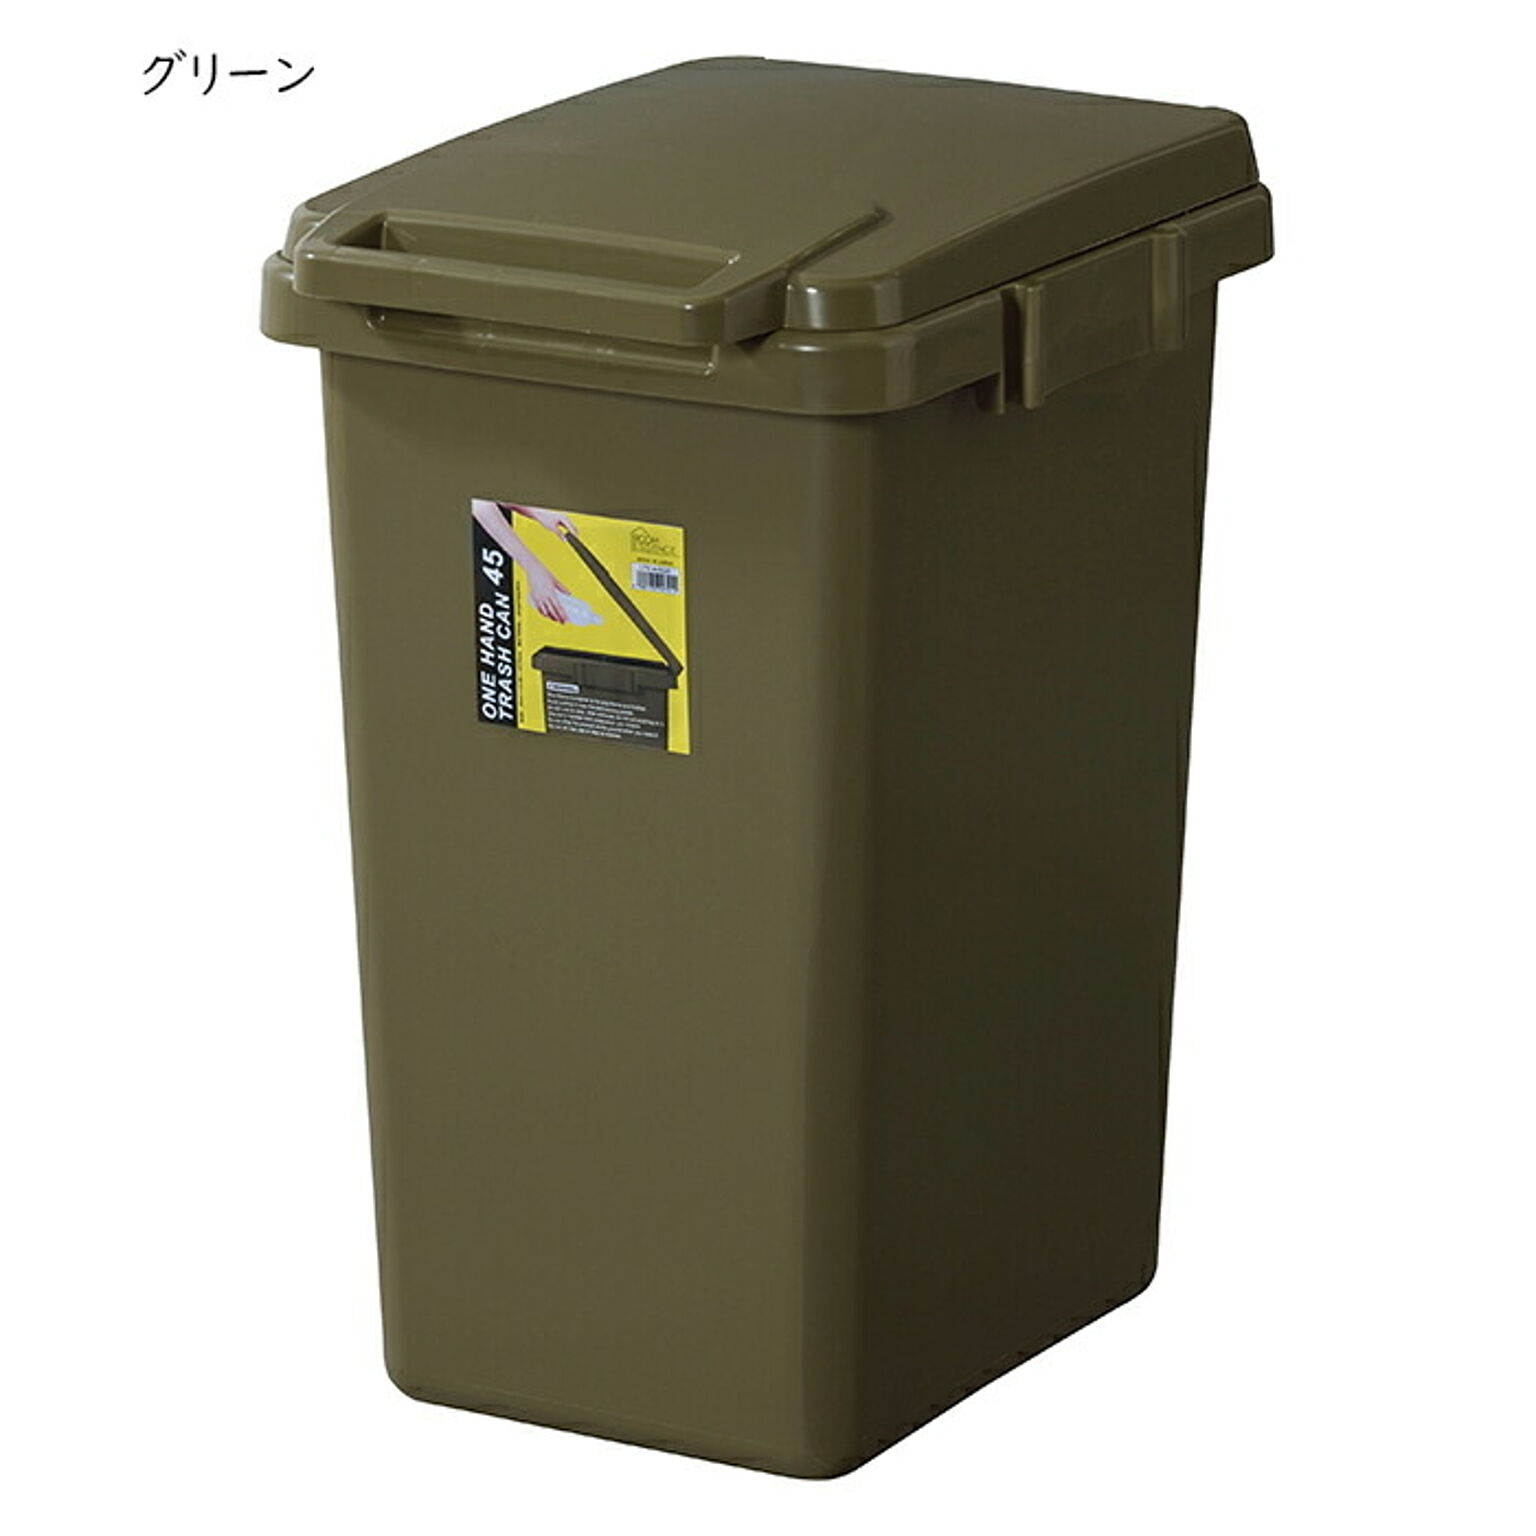 ゴミ箱 ワンハンド トラッシュカン 45L LFS-845 国産 幅34.1x奥行45x高さ57.5cm 東谷